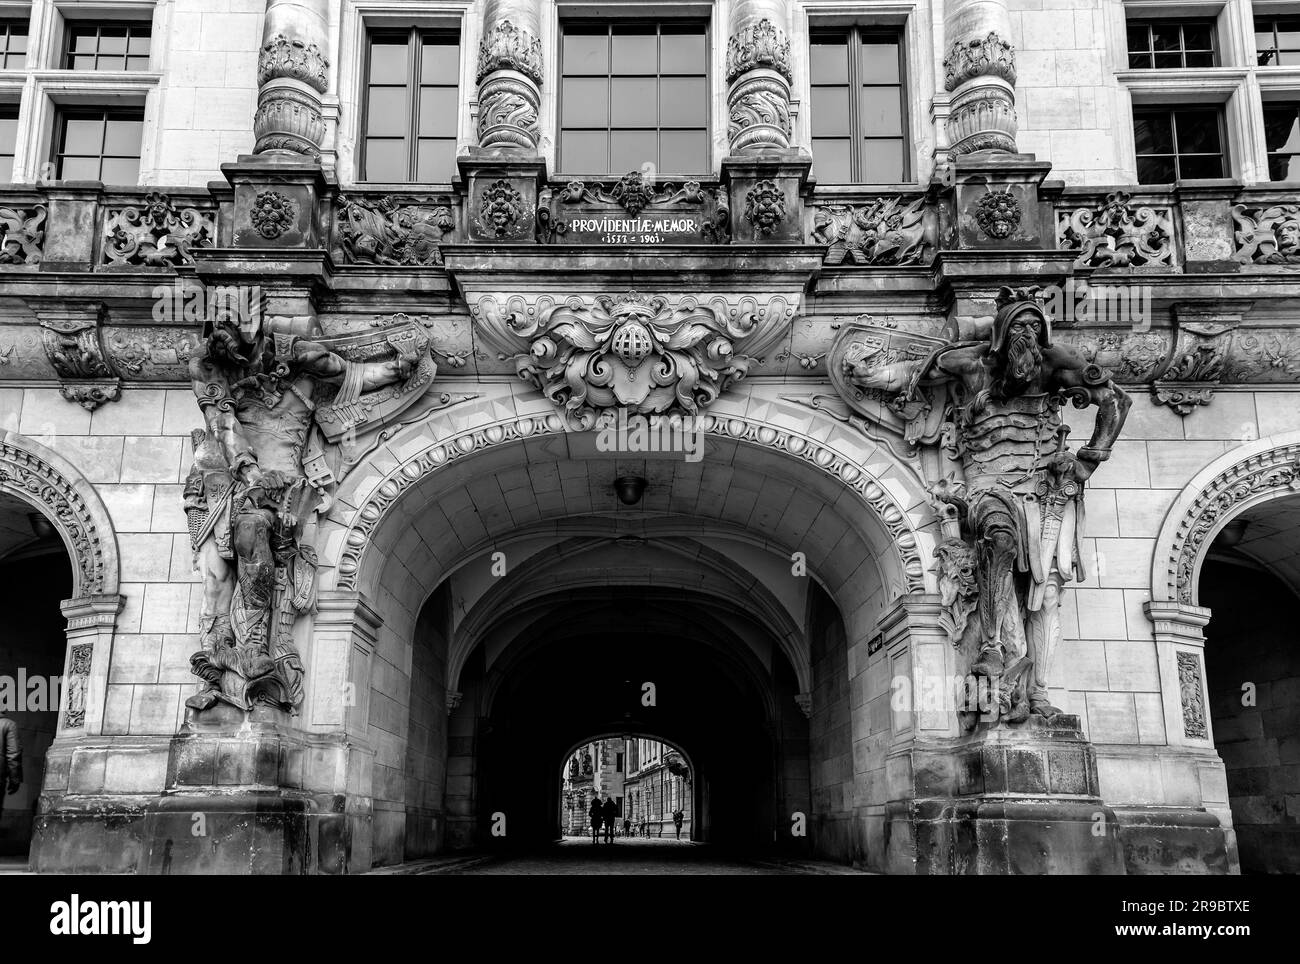 Dresde, Allemagne - 19 décembre 2021: L'ancienne porte George ou Georgentor dans la vieille ville, Altstadt de Dresde, la capitale de la Saxe, Allemagne. Banque D'Images